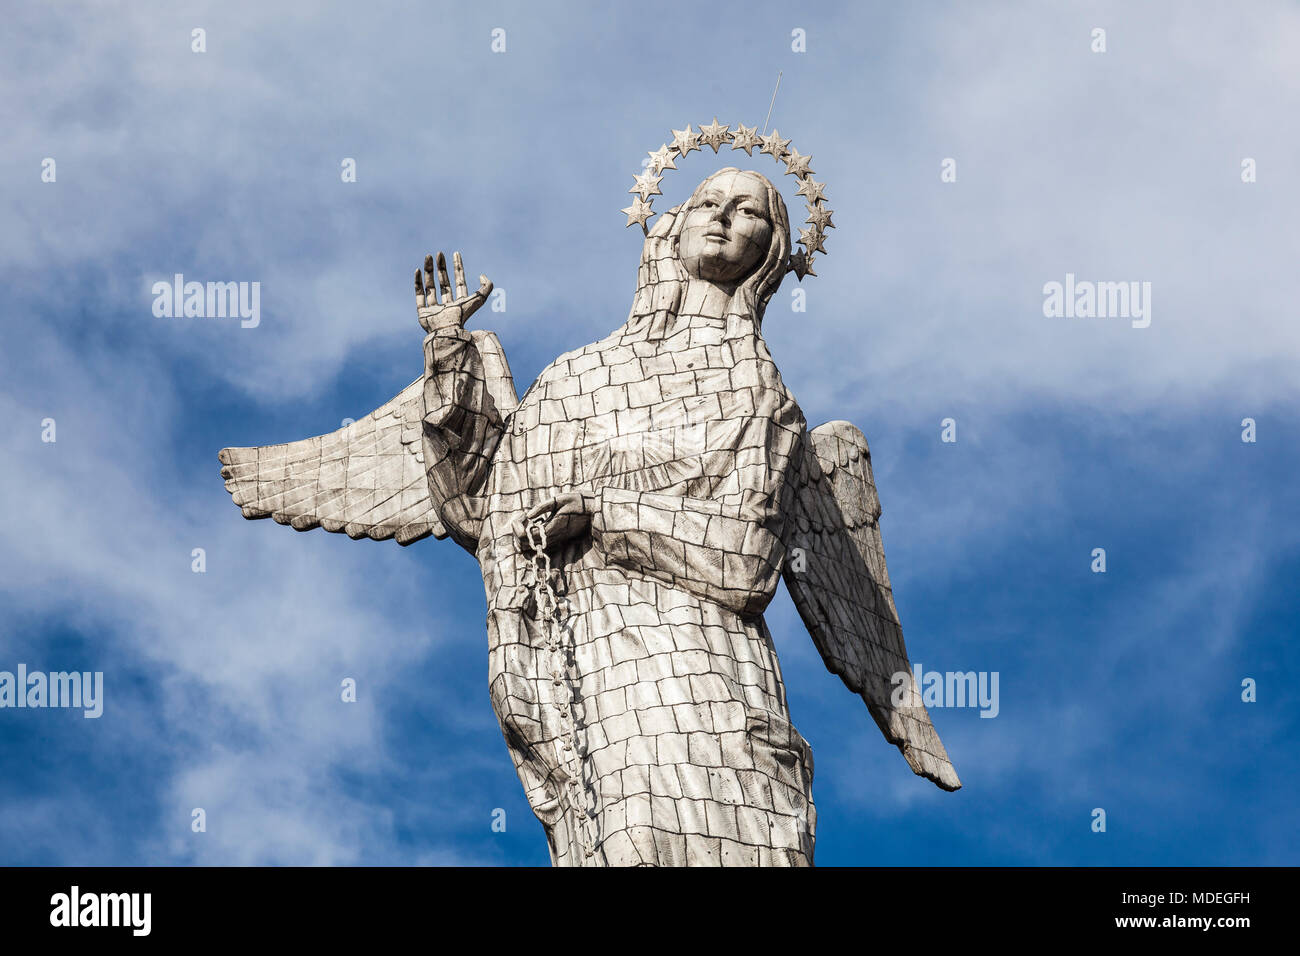 Virgen del Panecillo, monumental sculpture in aluminum metal. Quito, Ecuador Stock Photo